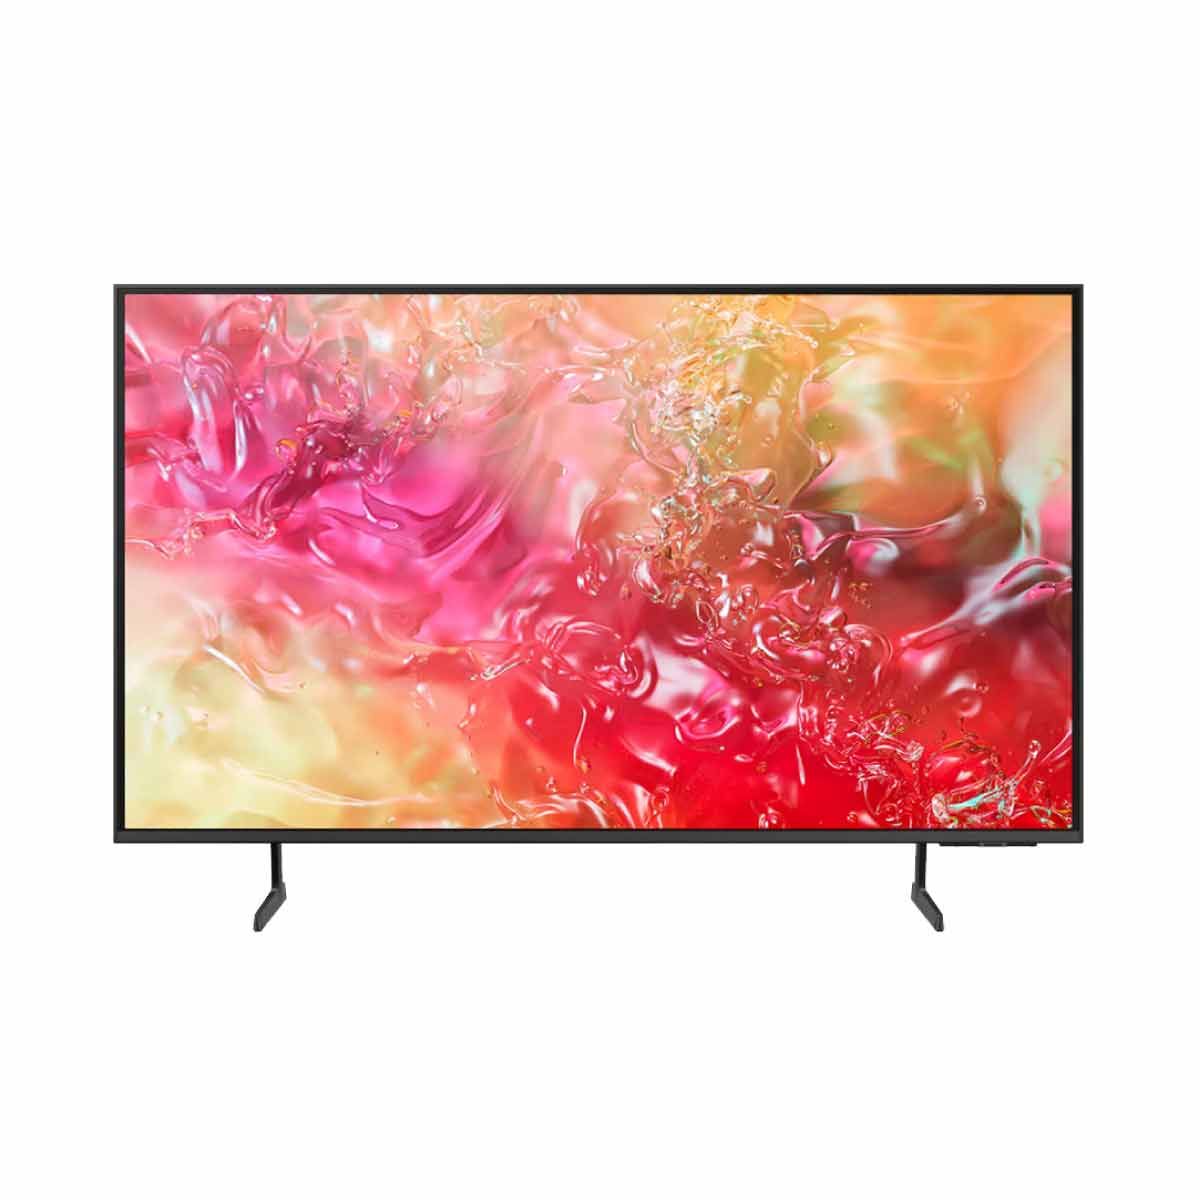 SAMSUNG LED Crystal UHD Smart TV 4K รุ่น UA85DU7700KXXT Smart One Remote ขนาด 85 นิ้ว